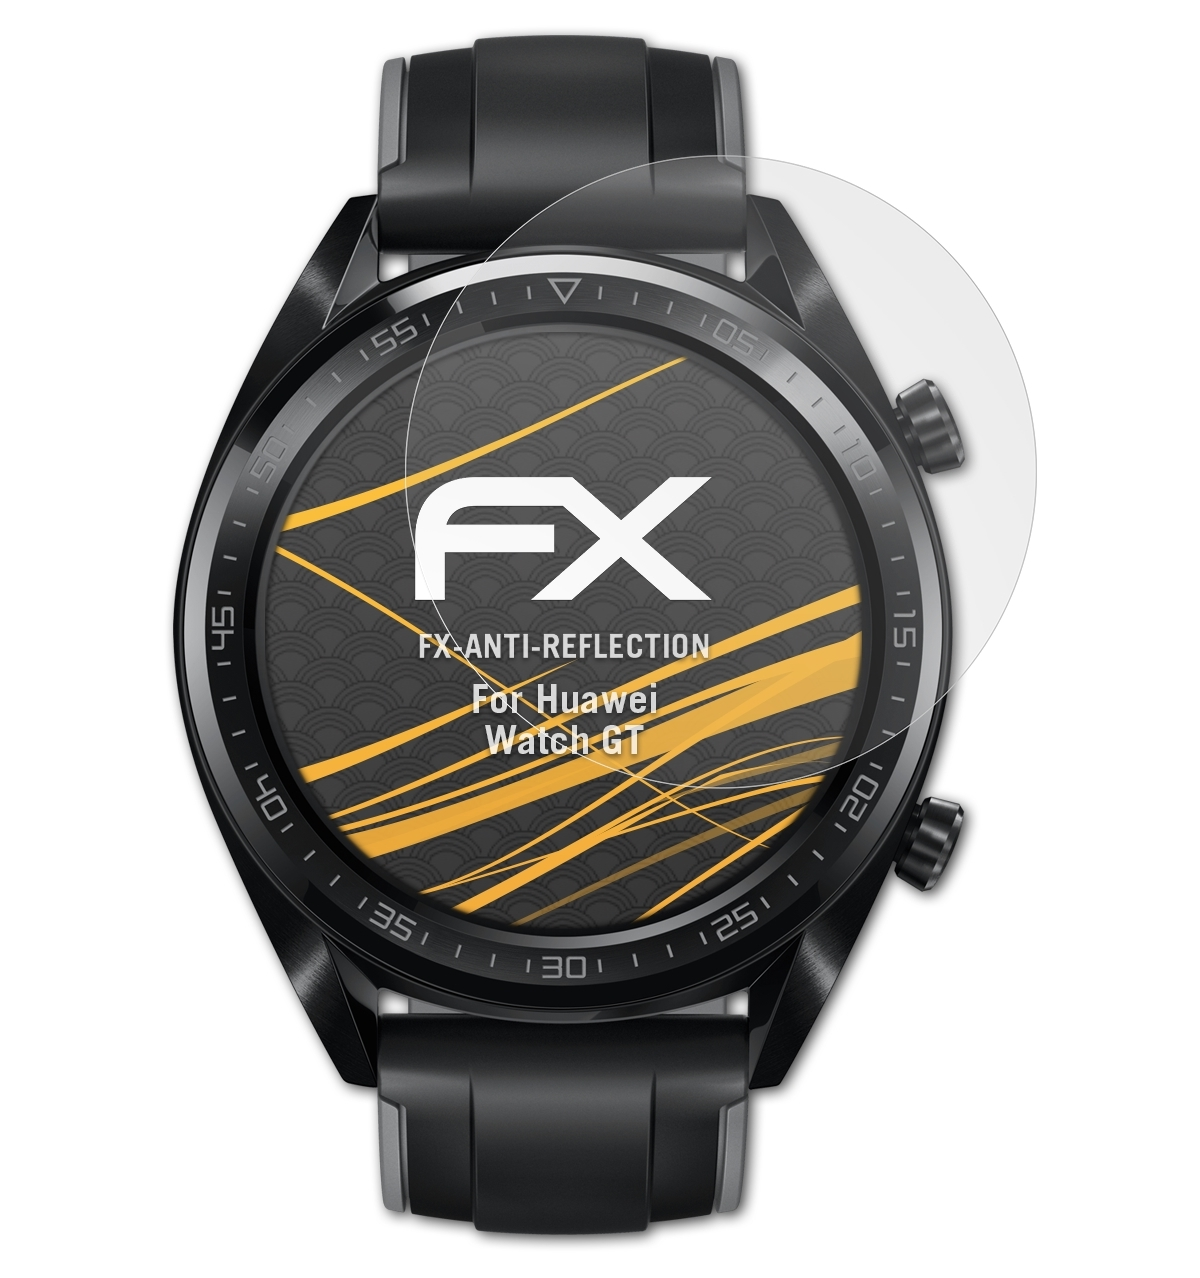 Displayschutz(für 3x Huawei ATFOLIX Watch GT) FX-Antireflex